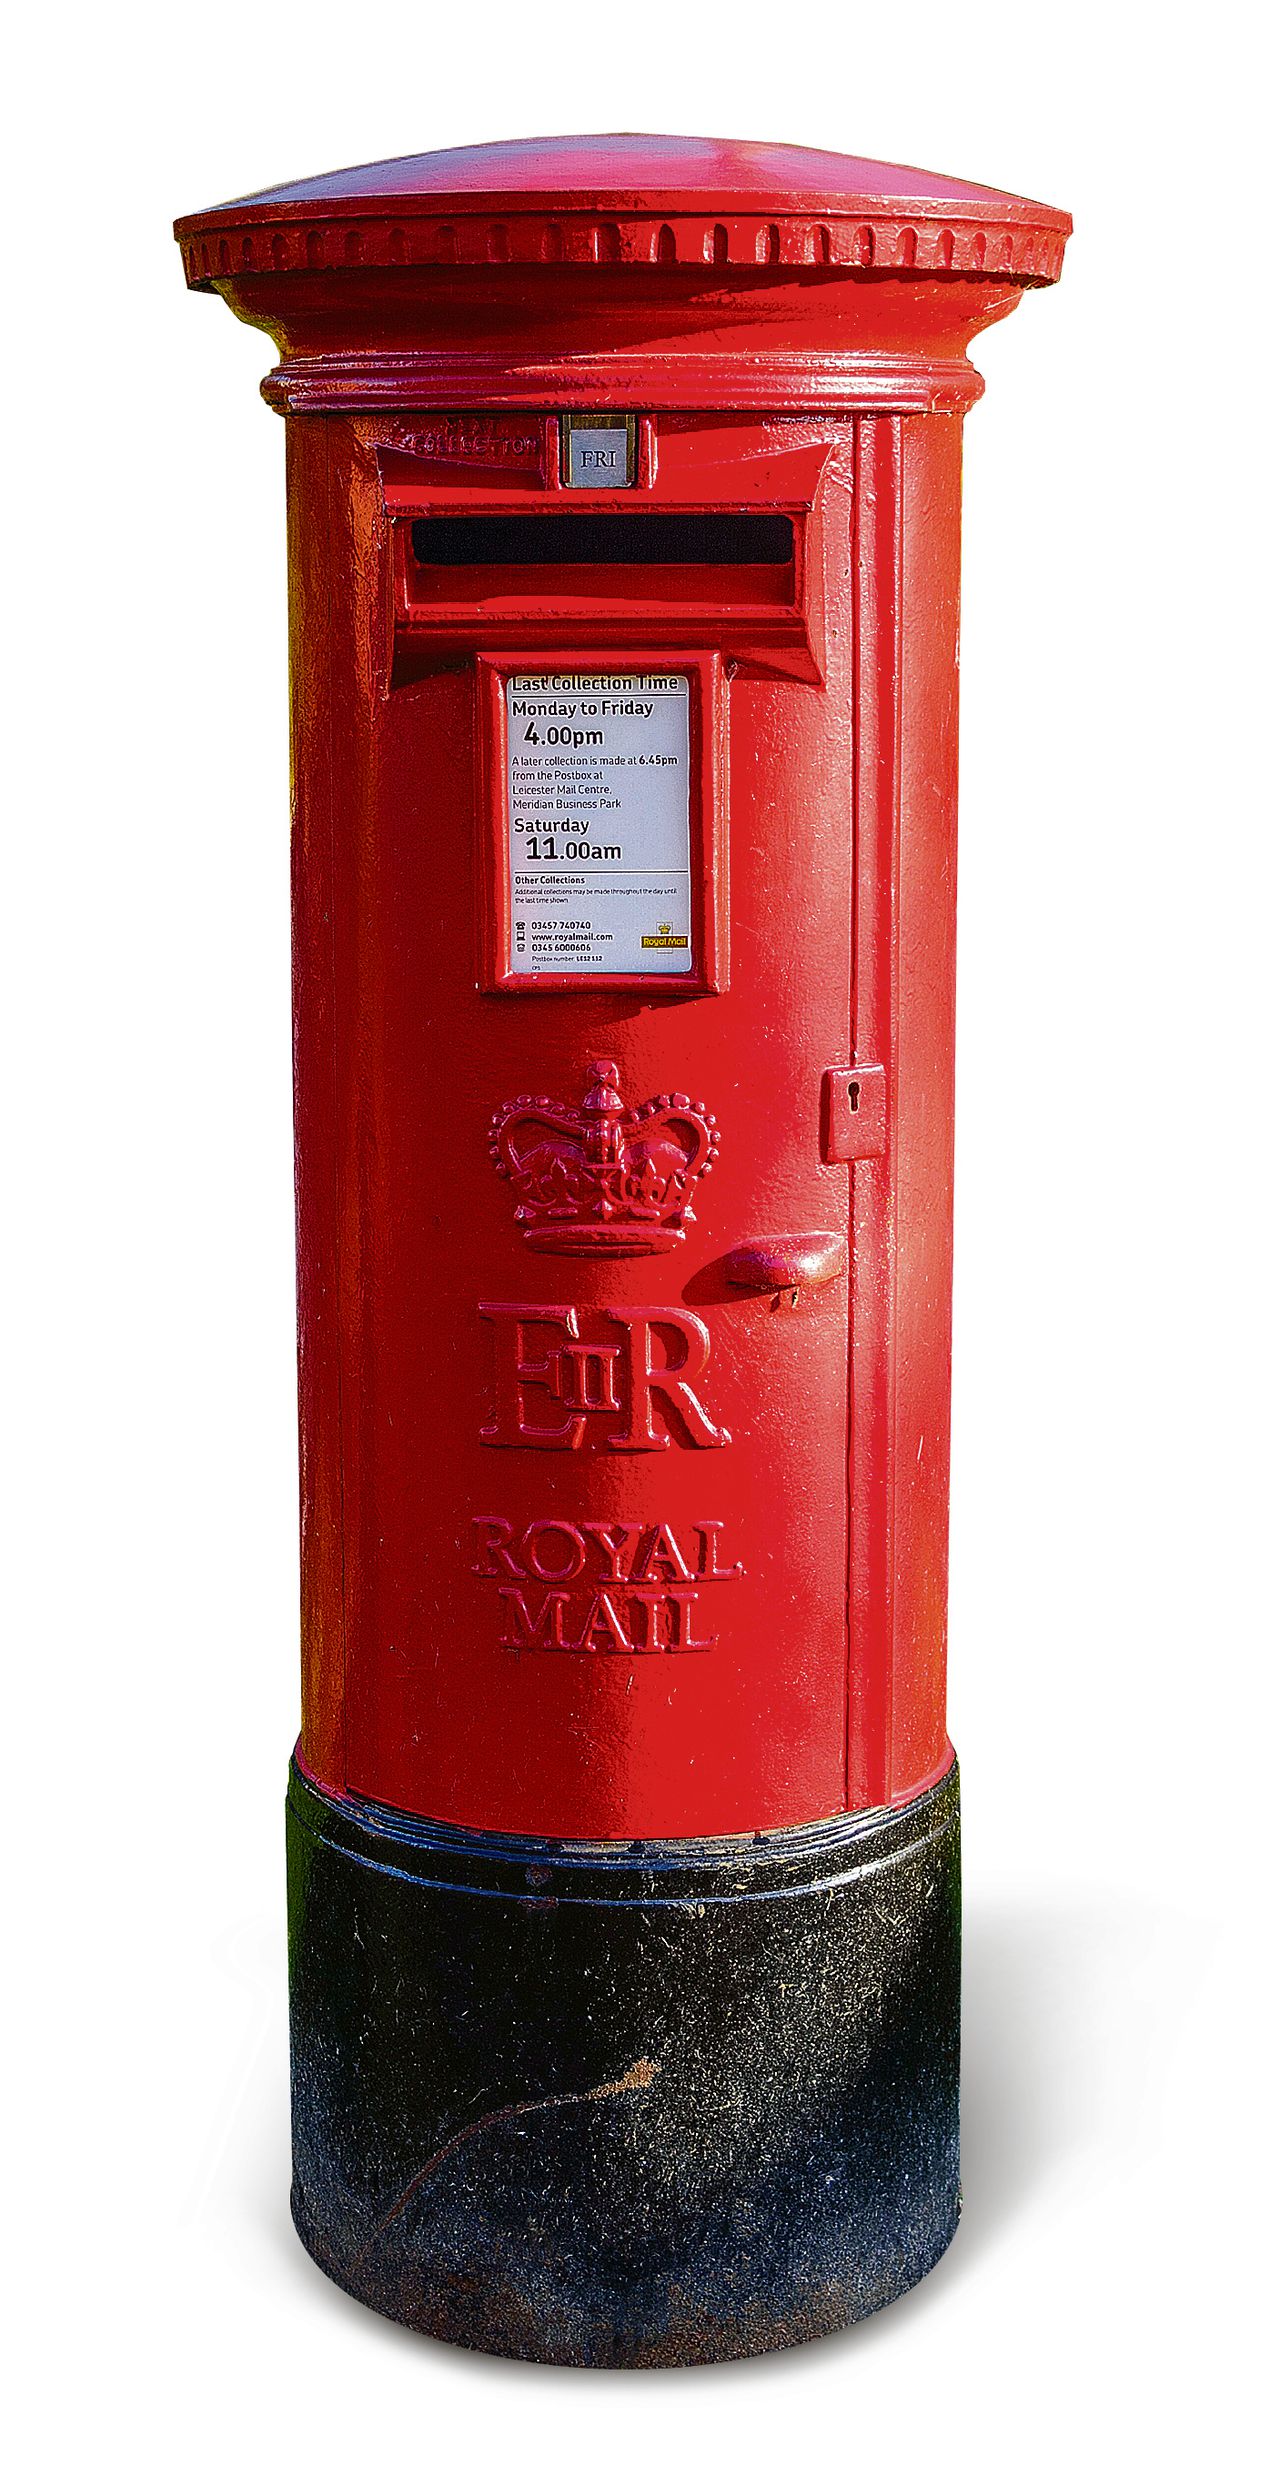 Brievenbus van de Britse postmaatschappij Royal Mail.